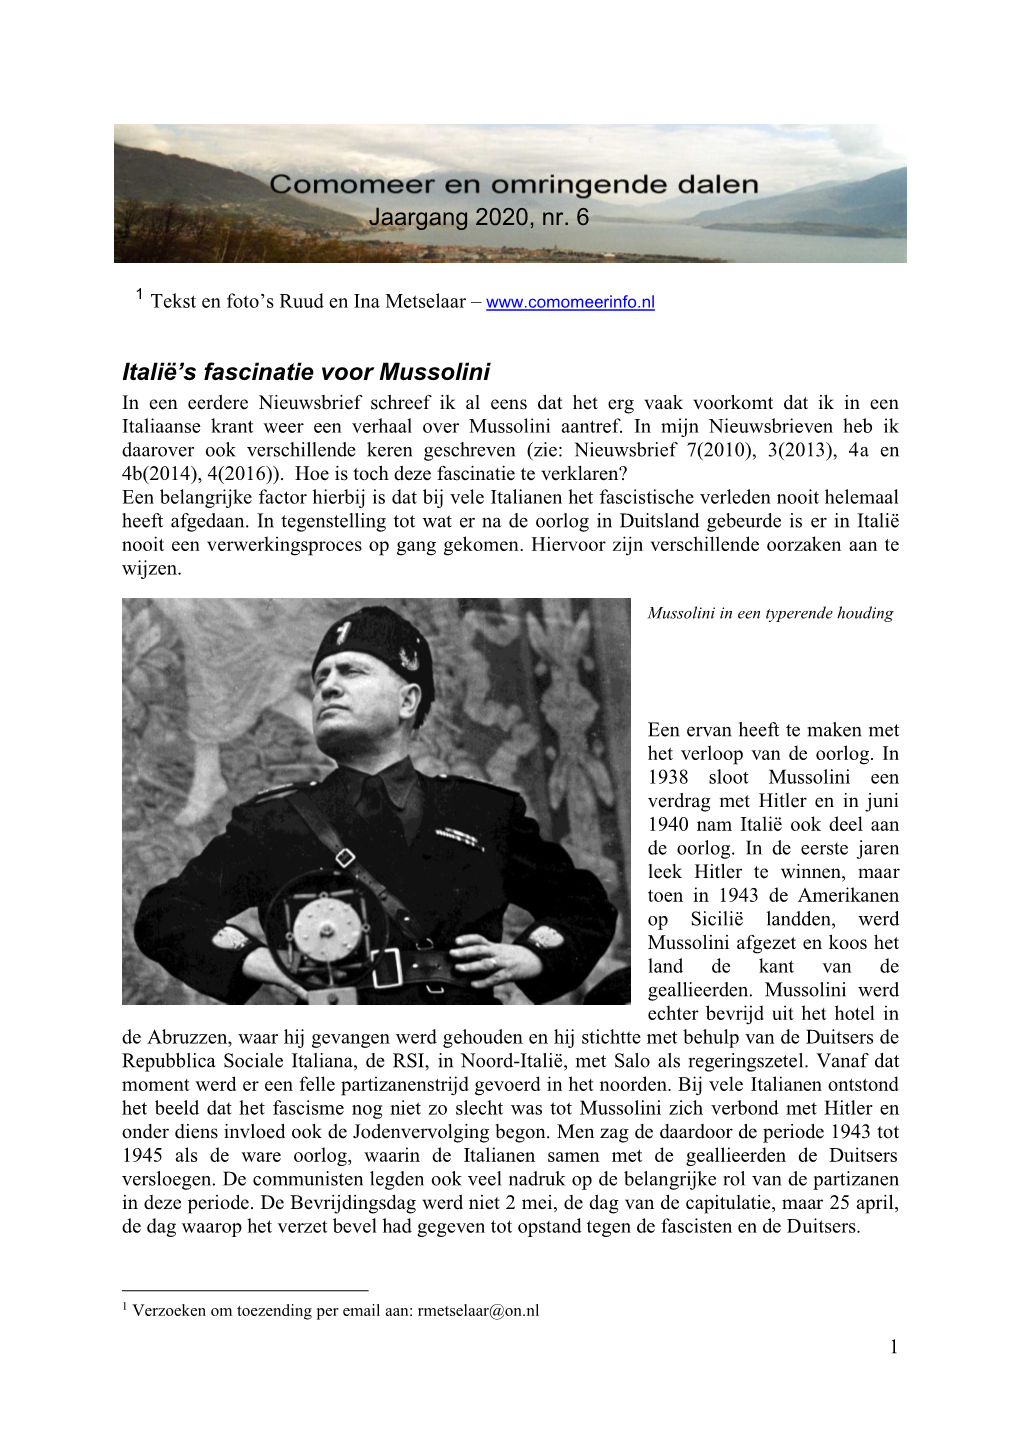 Mussolini in Een Eerdere Nieuwsbrief Schreef Ik Al Eens Dat Het Erg Vaak Voorkomt Dat Ik in Een Italiaanse Krant Weer Een Verhaal Over Mussolini Aantref